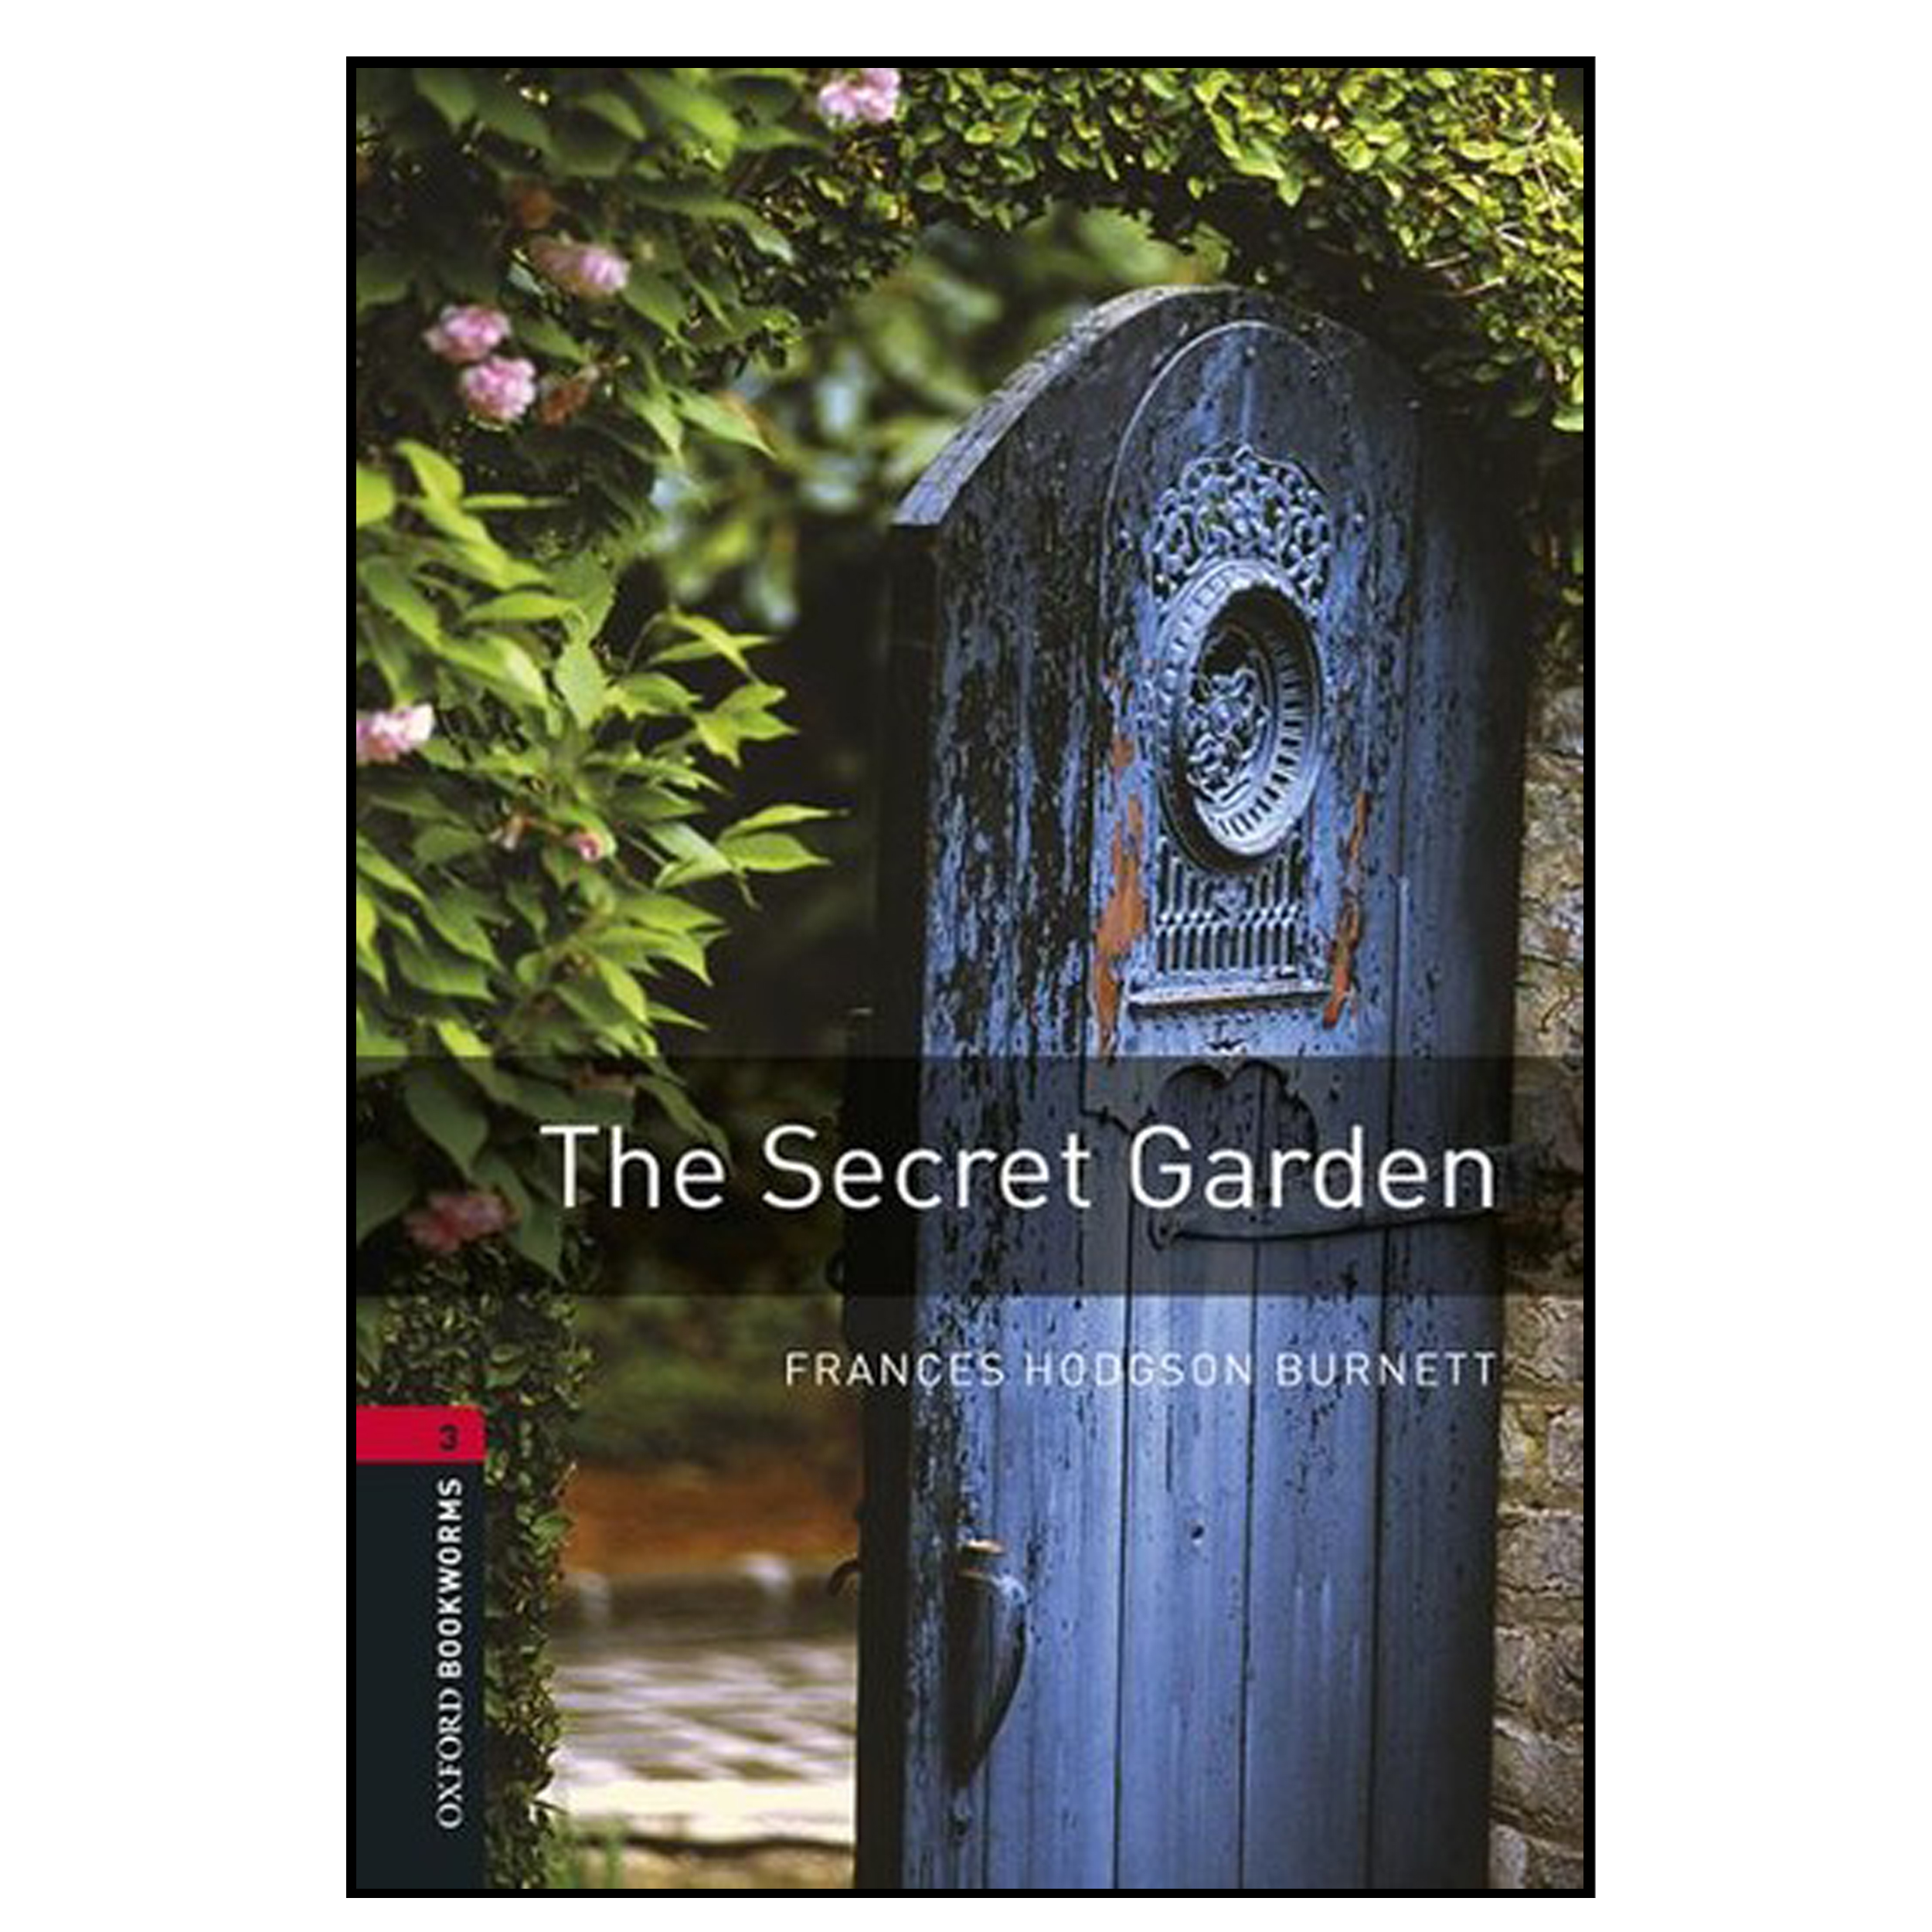 نقد و بررسی کتاب The Secret Garden اثر Frances Hodgson Burnett انتشارات هدف نوین توسط خریداران